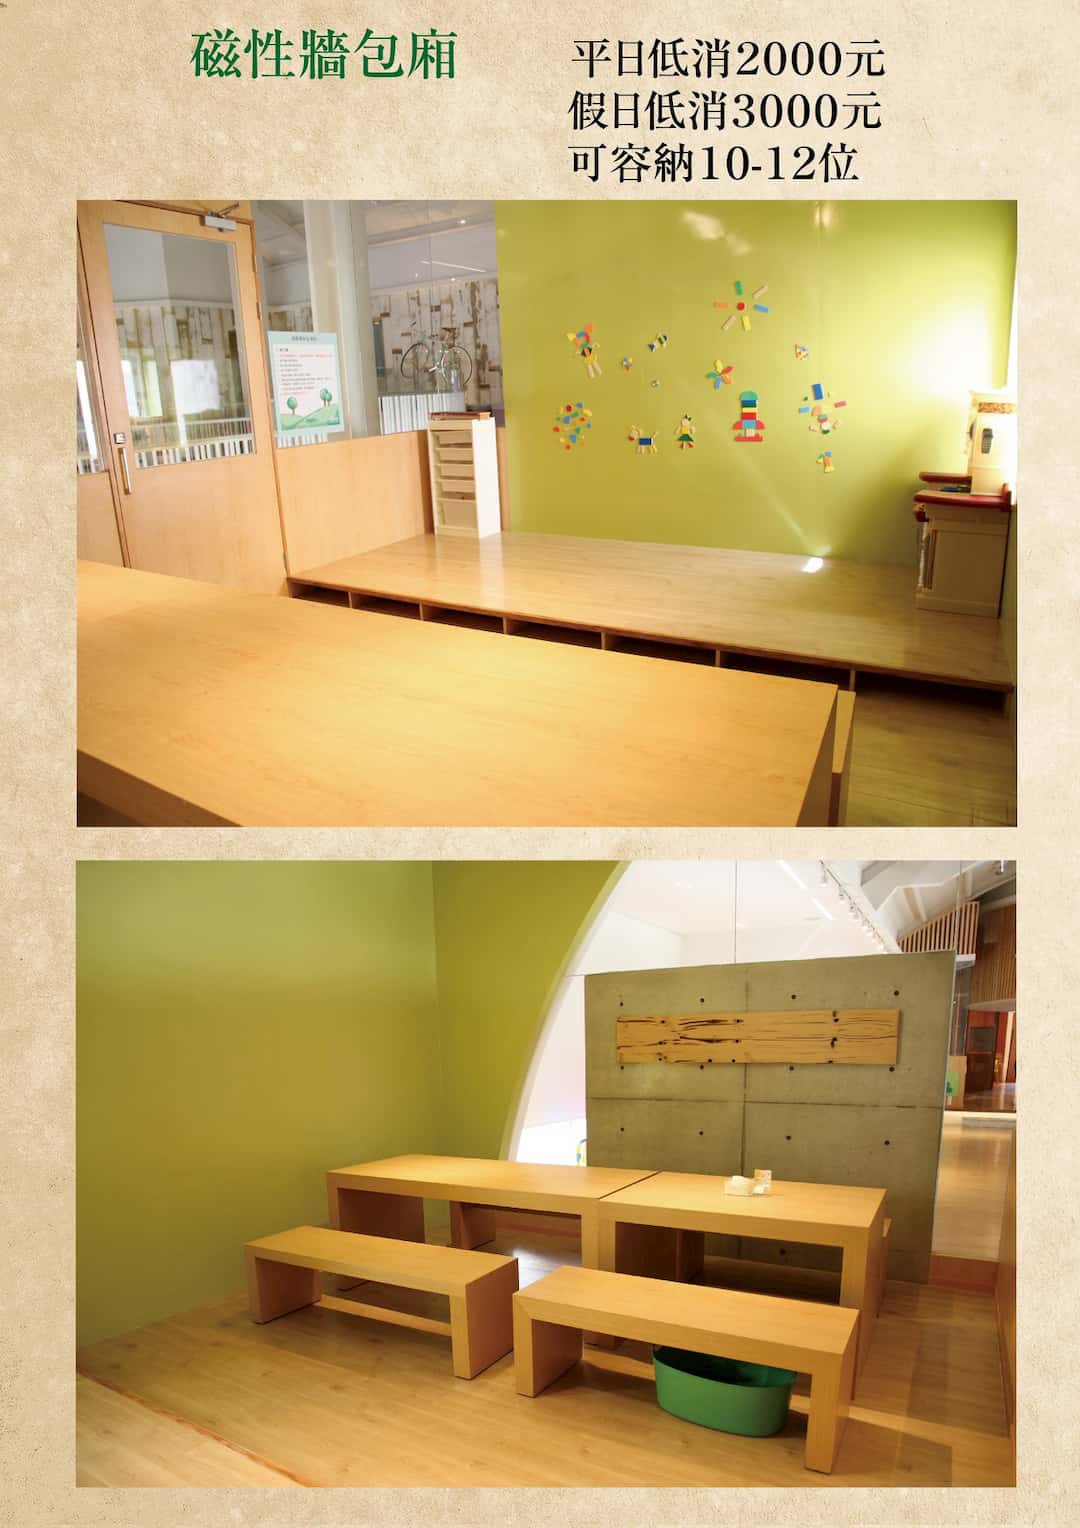 叉子餐廳- 2F兒童遊戲磁性牆包廂區- 圖片來源:叉子餐廳官方FB